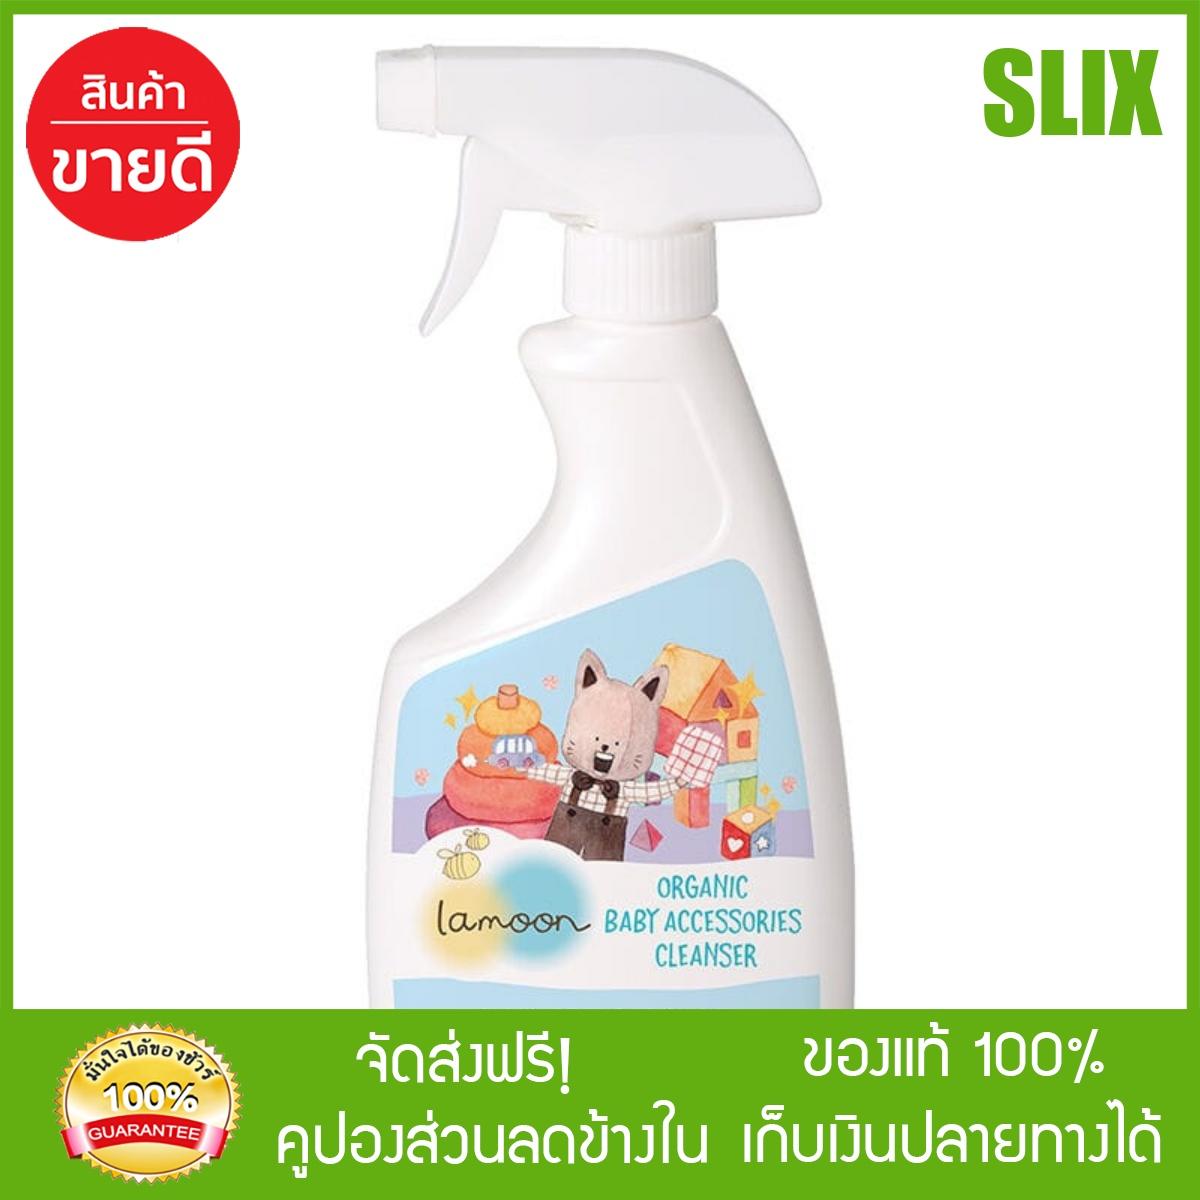 [Slix]- ละมุนน้ำยาทำความสะอาดของใช้เด็กออร์แกนิค 500มล. Lamoon ผลิตภัณฑ์ทำความสะอาดสำหรับเด็ก ส่ง Kerry เก็บปลายทางได้